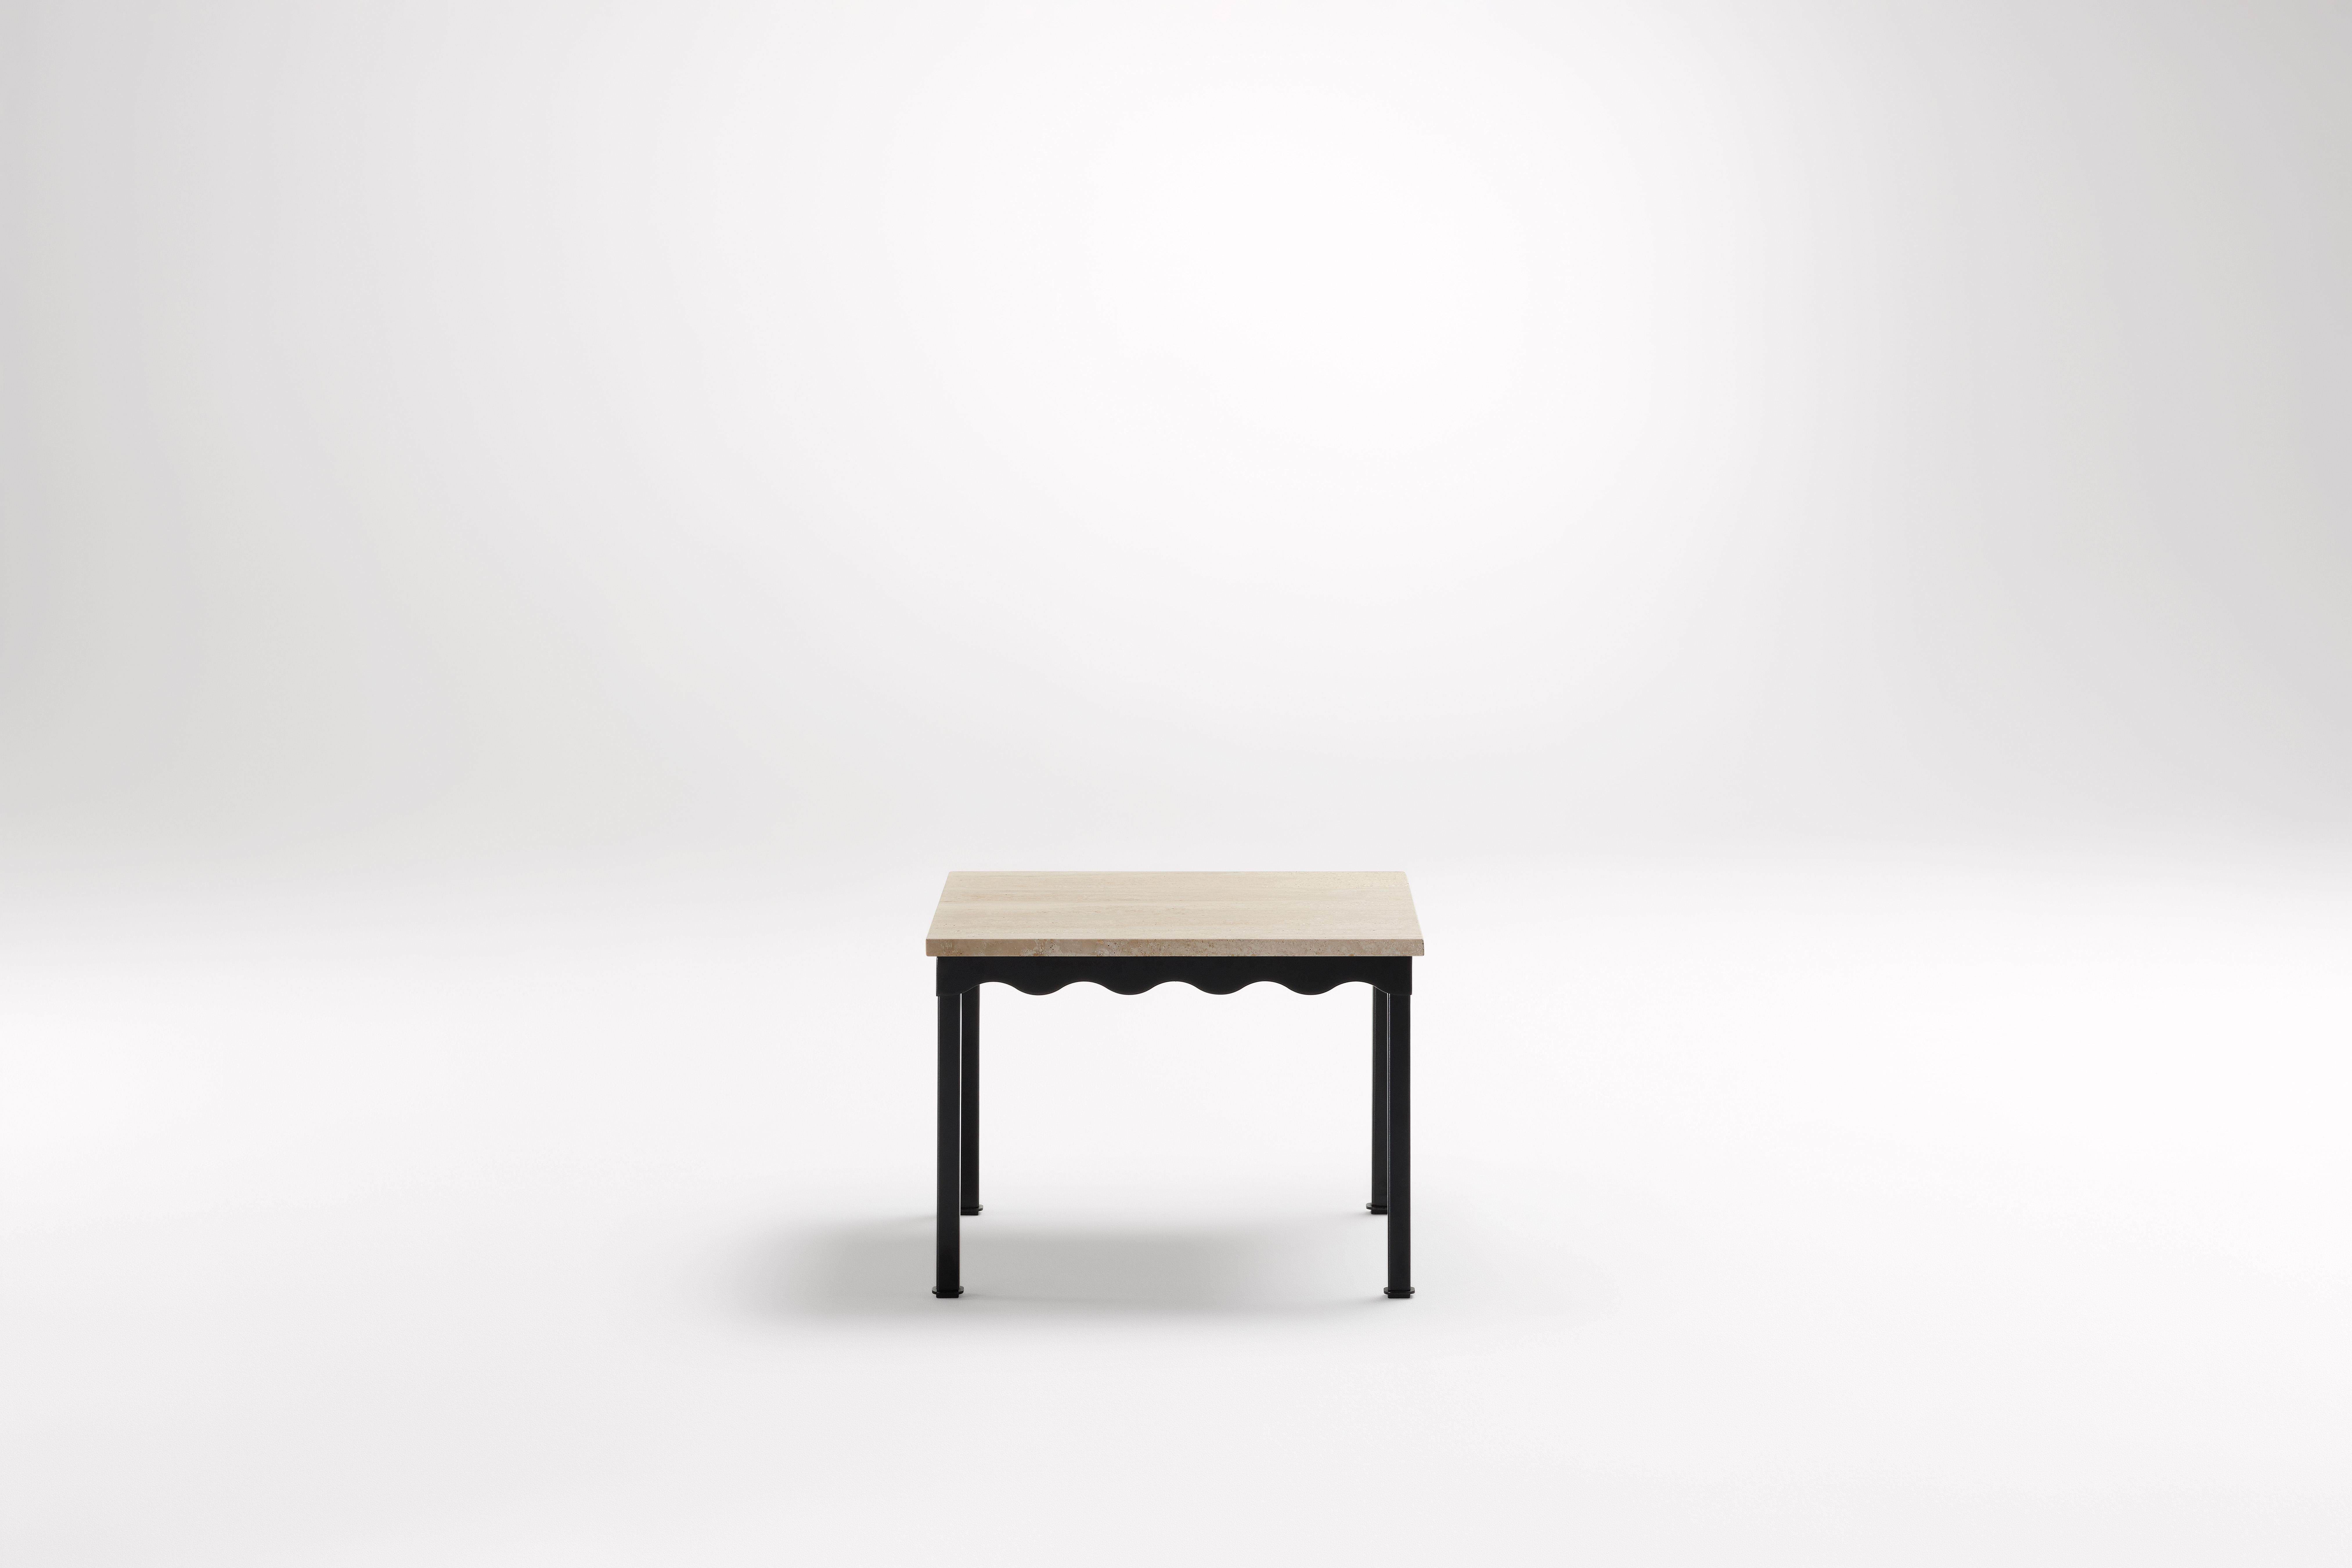 Table d'appoint Bellini en travertin par Coco Flip
Dimensions : D 54 x L 54 x H 39 cm
Matériaux : Plateau en pierre, cadre en acier peint par poudrage. 
Poids : 12 kg


Coco Flip est un studio de design de meubles et de luminaires basé à Melbourne,